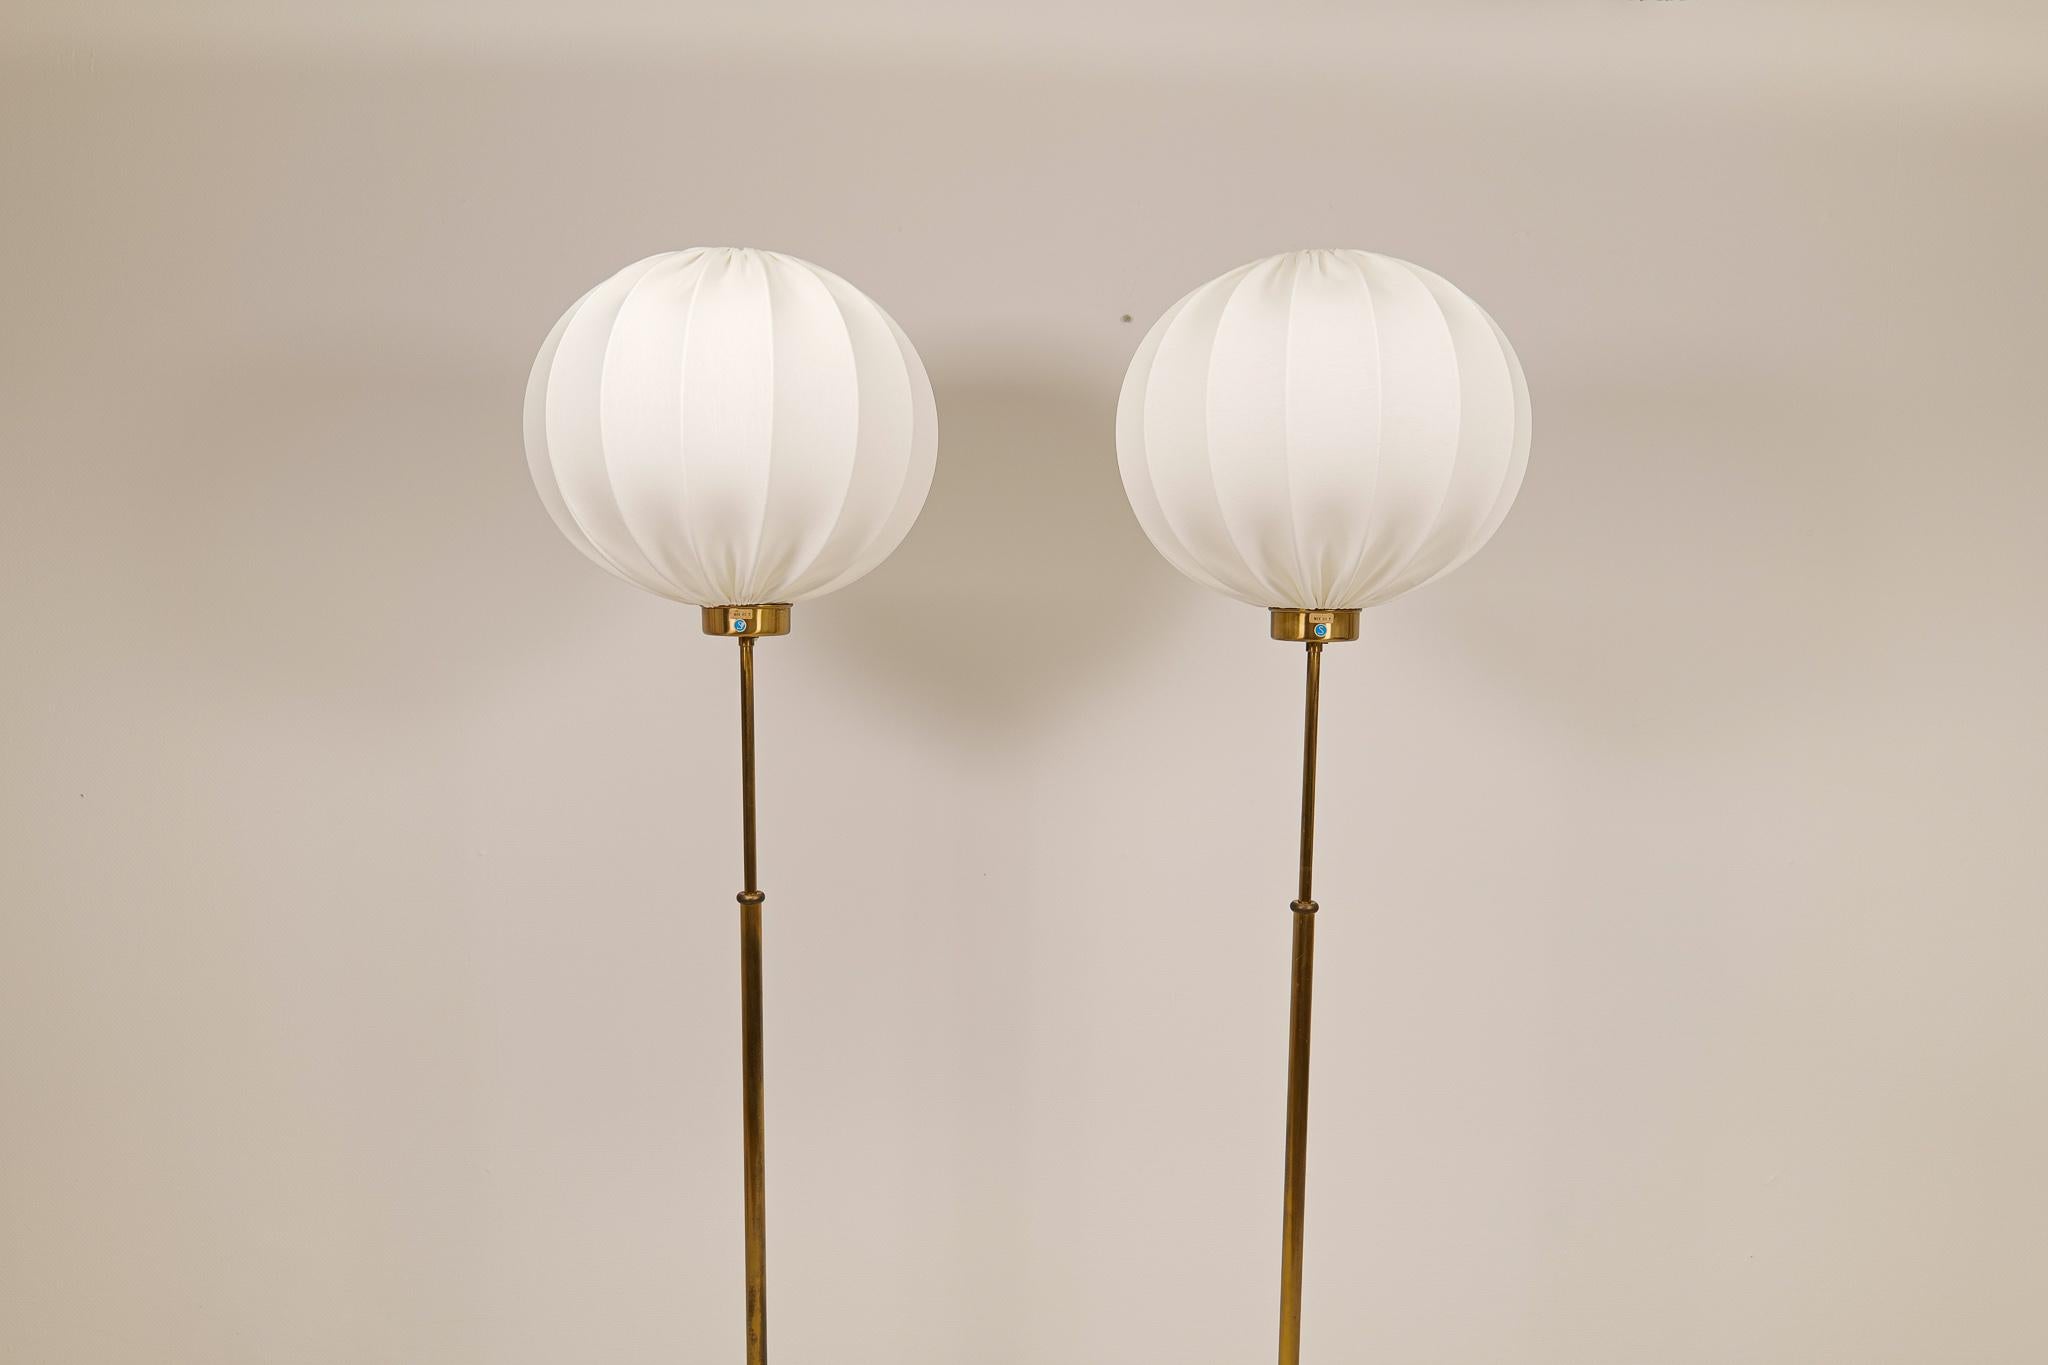 Mid-20th Century Josef Frank Floor Lamps Model G2326 Produced by Svenskt Tenn Sweden